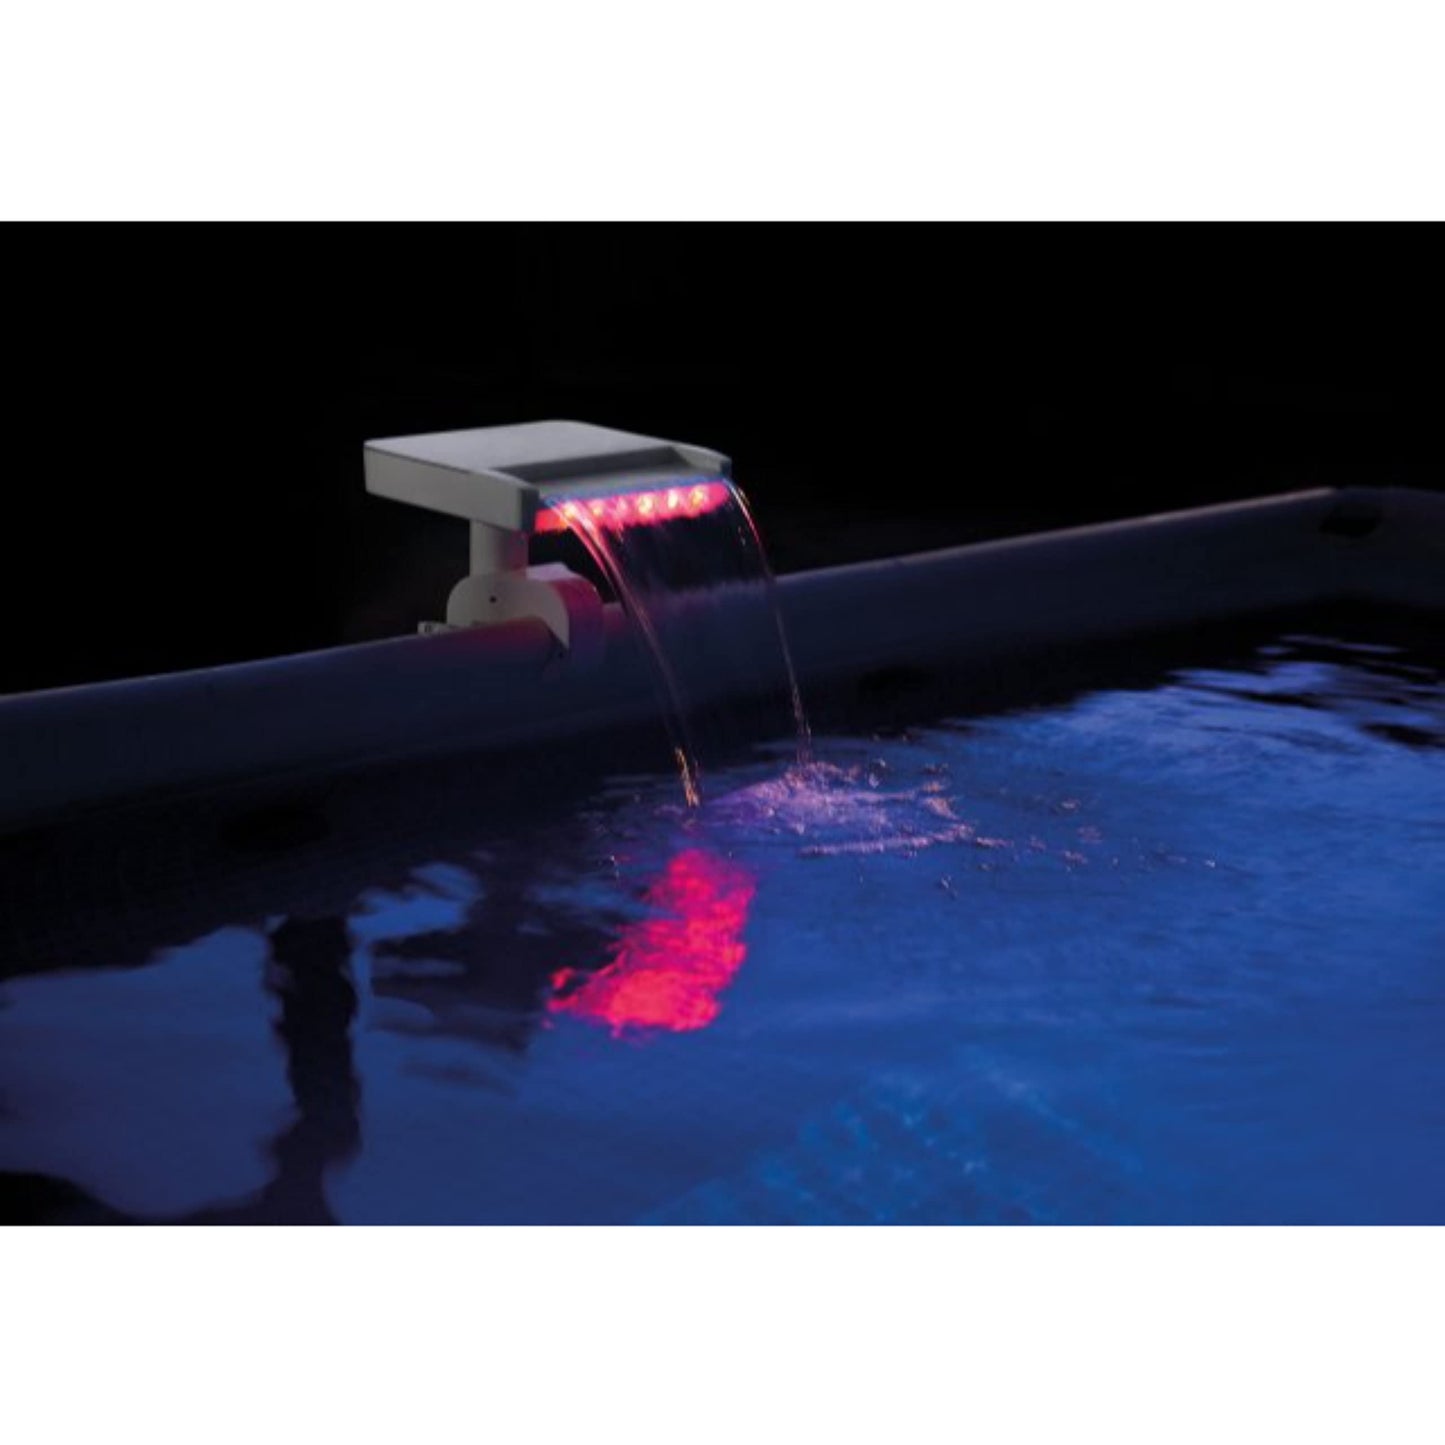 Cascade LED multicolore Intex pour piscines hors sol Intex, avec alimentation hydroélectrique - Aucune pile requise, 14"